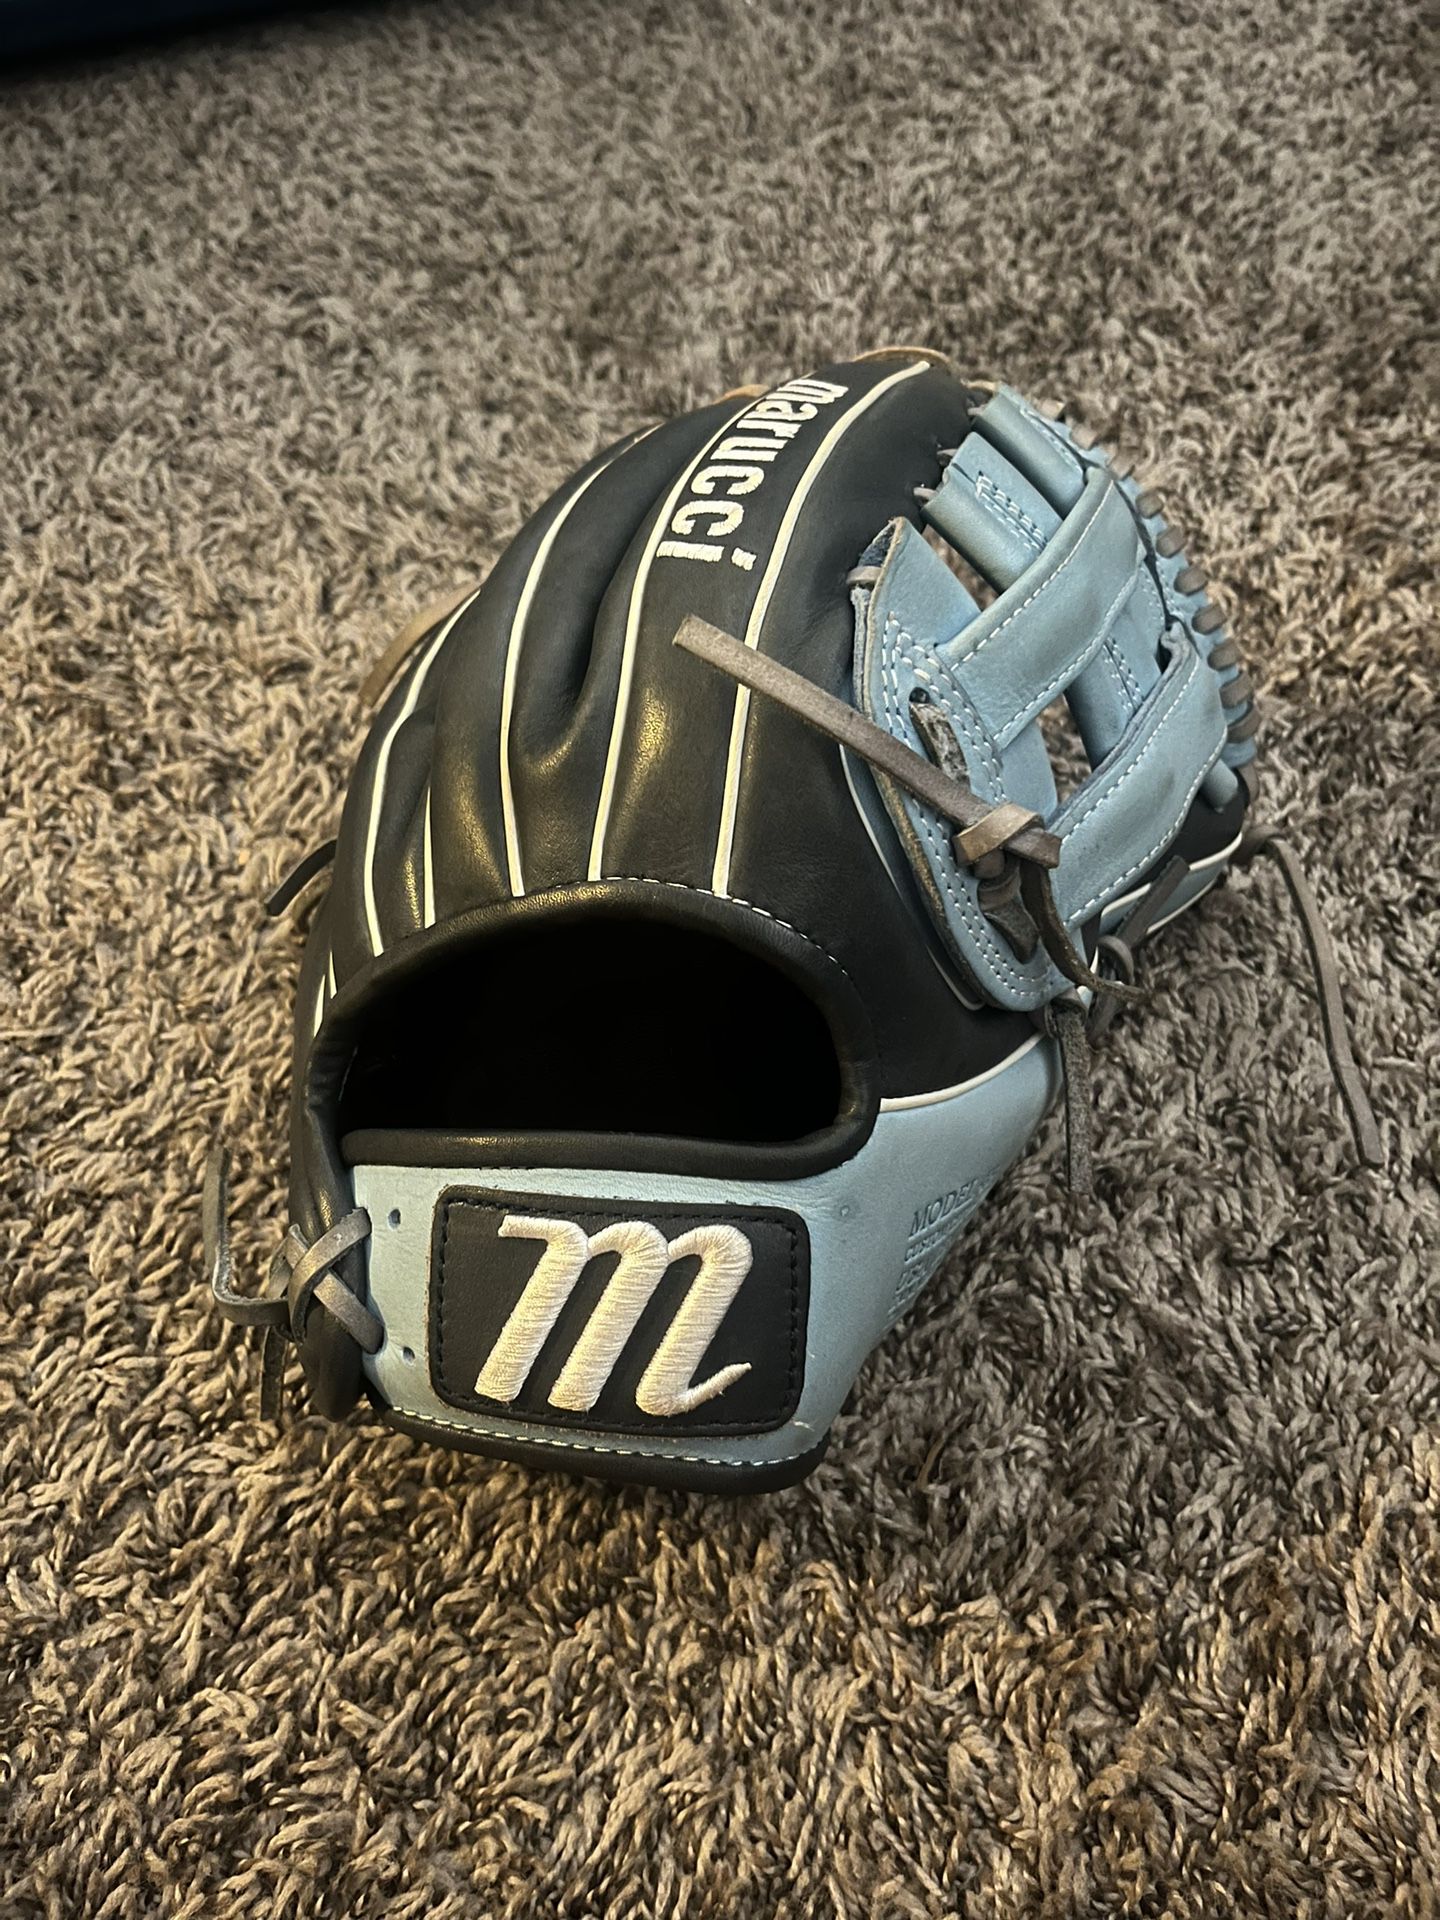 Marucci 12” Baseball Glove